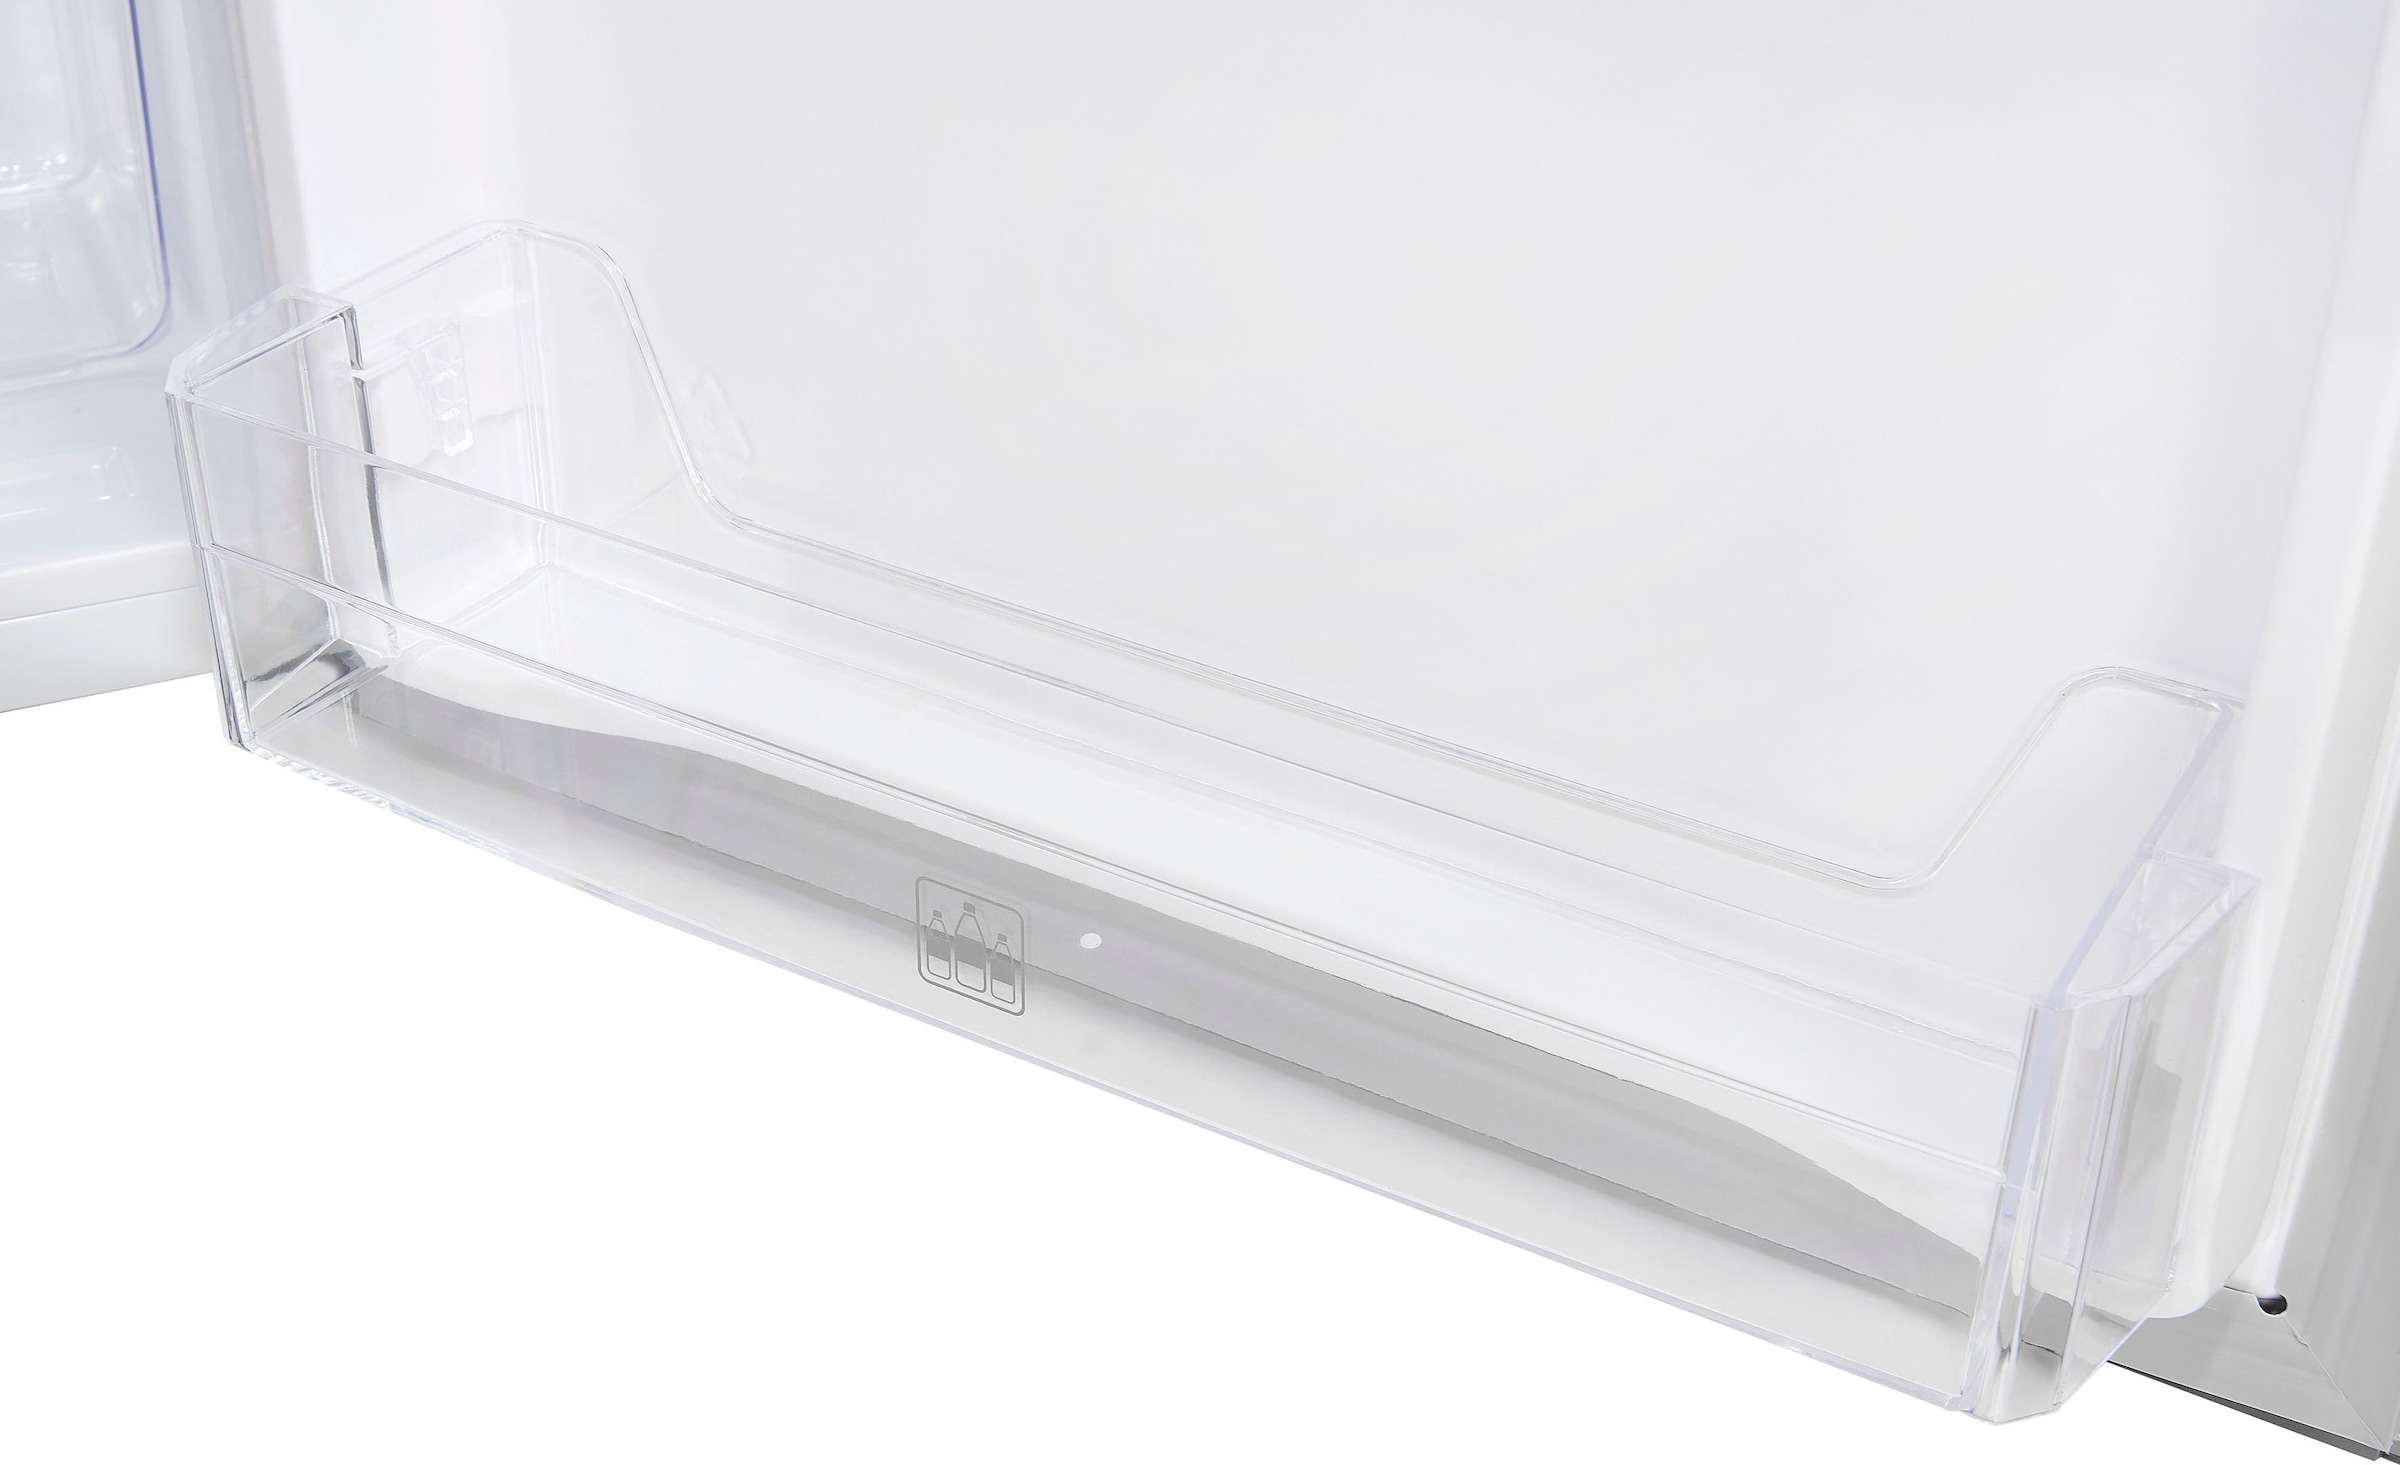 beste Qualität exquisit Kühlschrank, KS16-4-HE-040E jetzt inoxlook, bei 85,5 cm cm OTTO hoch, 55,0 breit